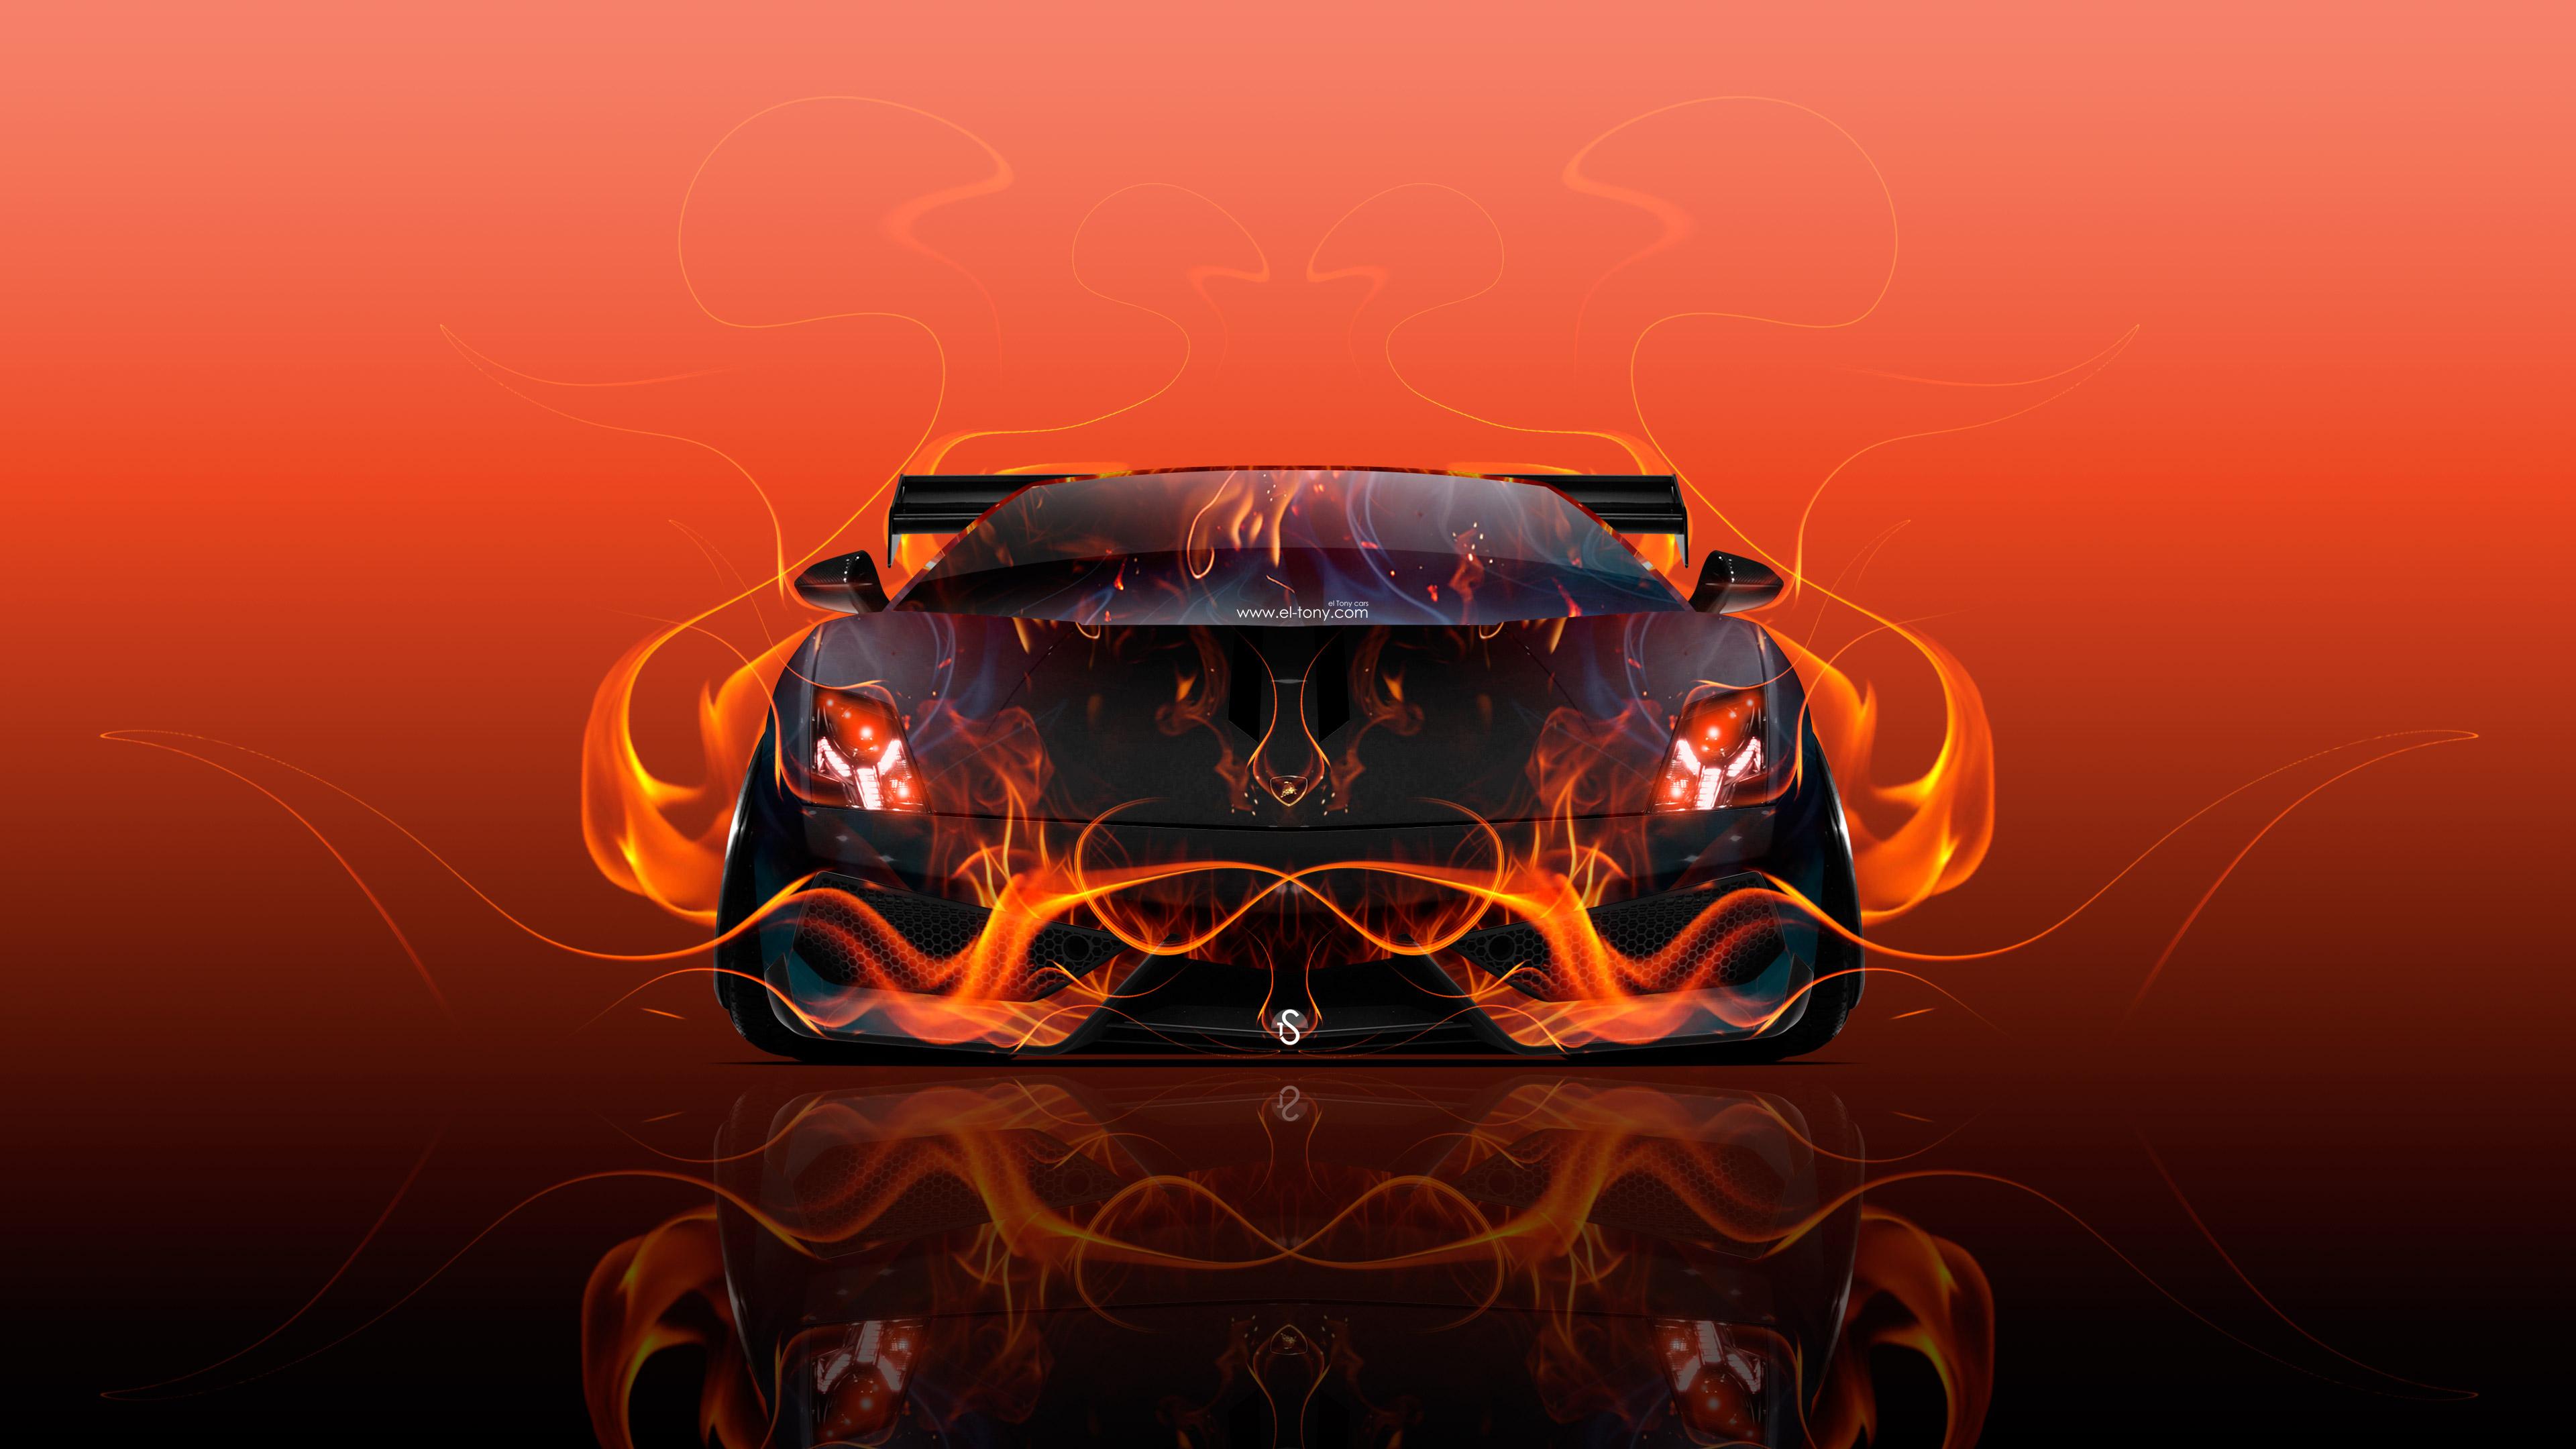 Lamborghini Gallardo Tuning Front Fire Abstract Car 2015 Wallpaper el Tony Cars